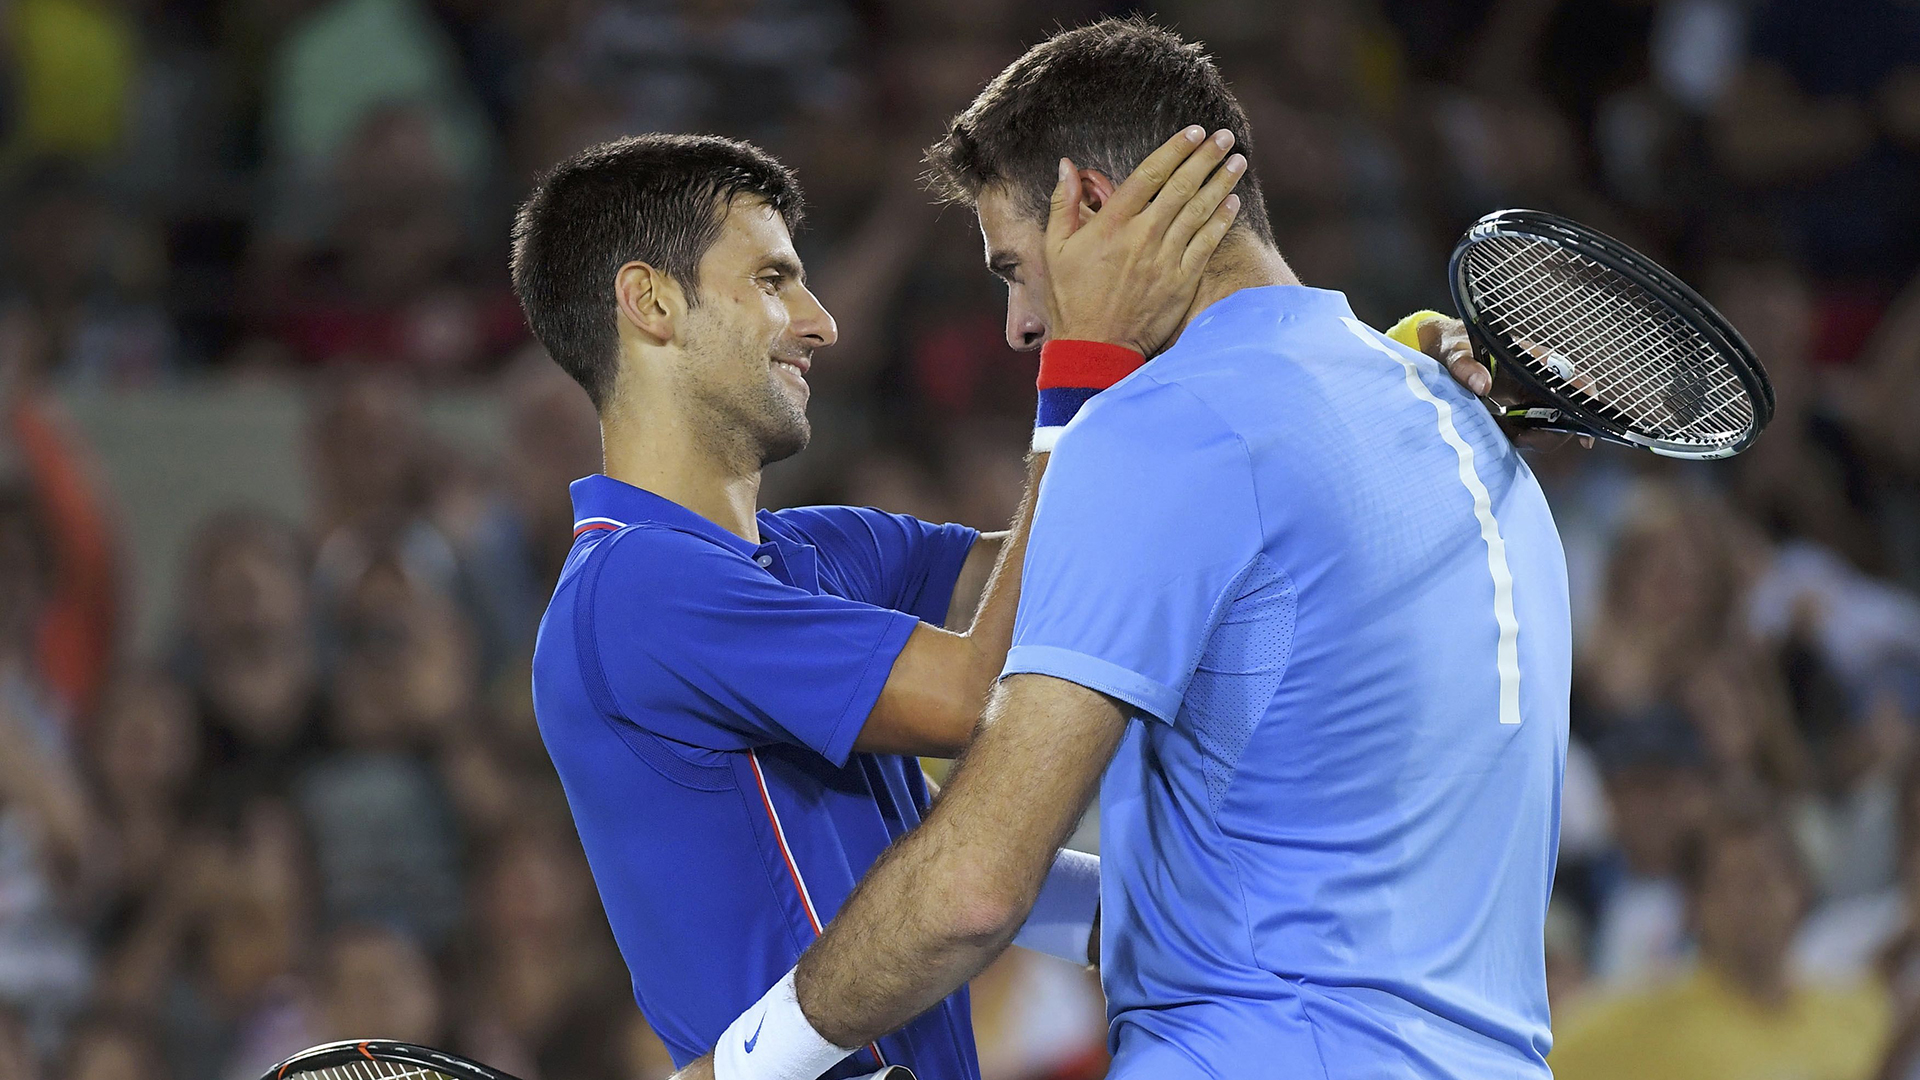 Los elogios a Del Potro: el gesto de Nalbandian, el mensaje de Djokovic y el posteo más emotivo de un tenista estadounidense